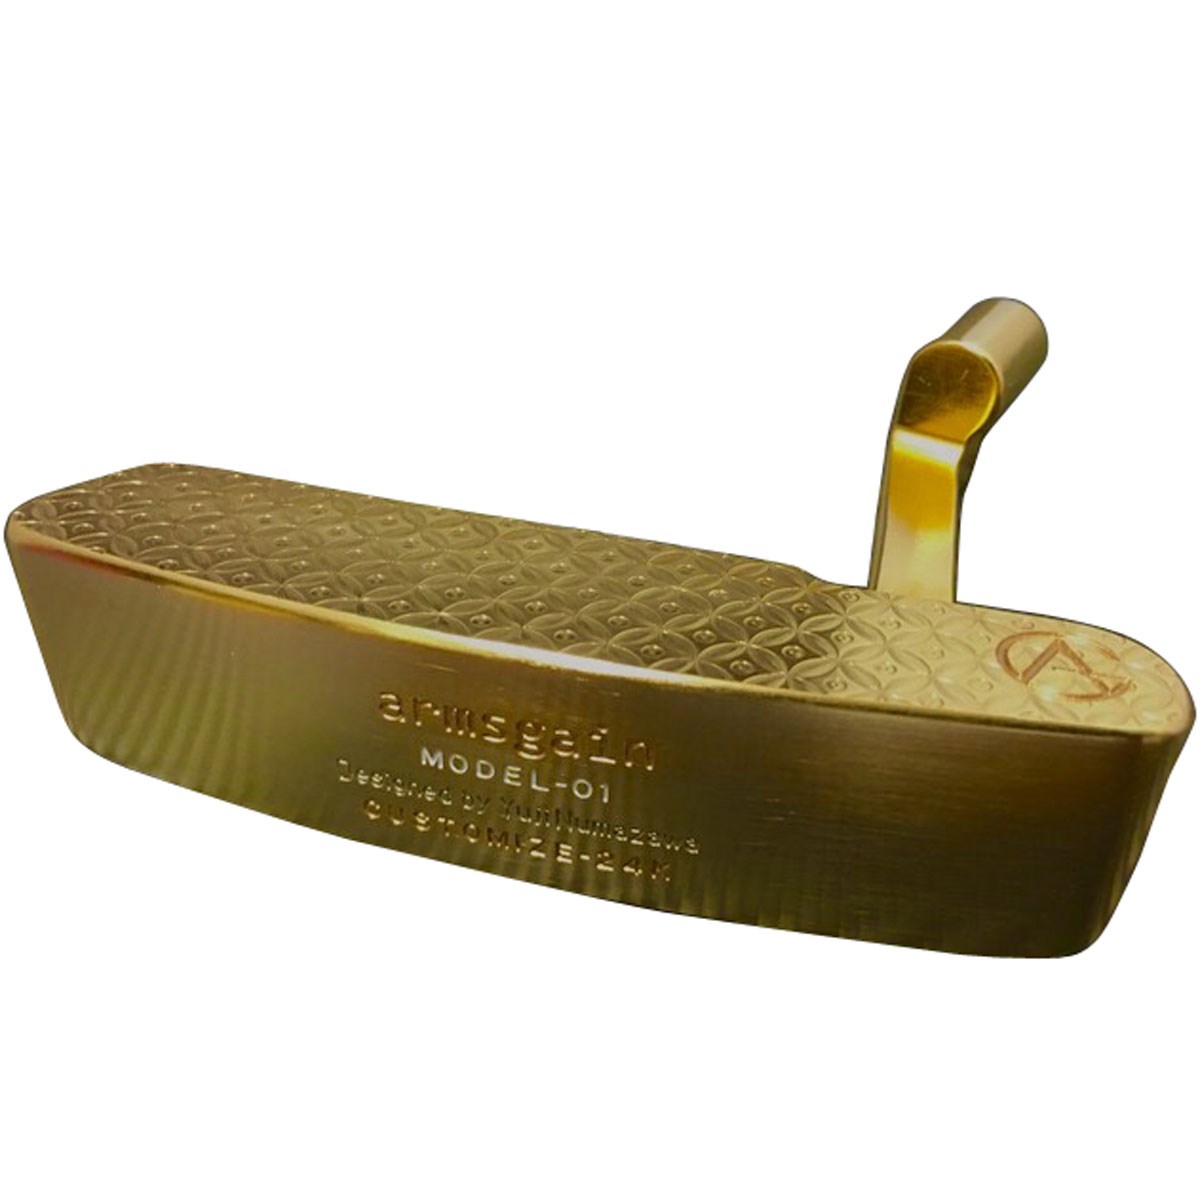  アームスゲイン Model-01 パター純金24Kコーティングモデル ゴルフ